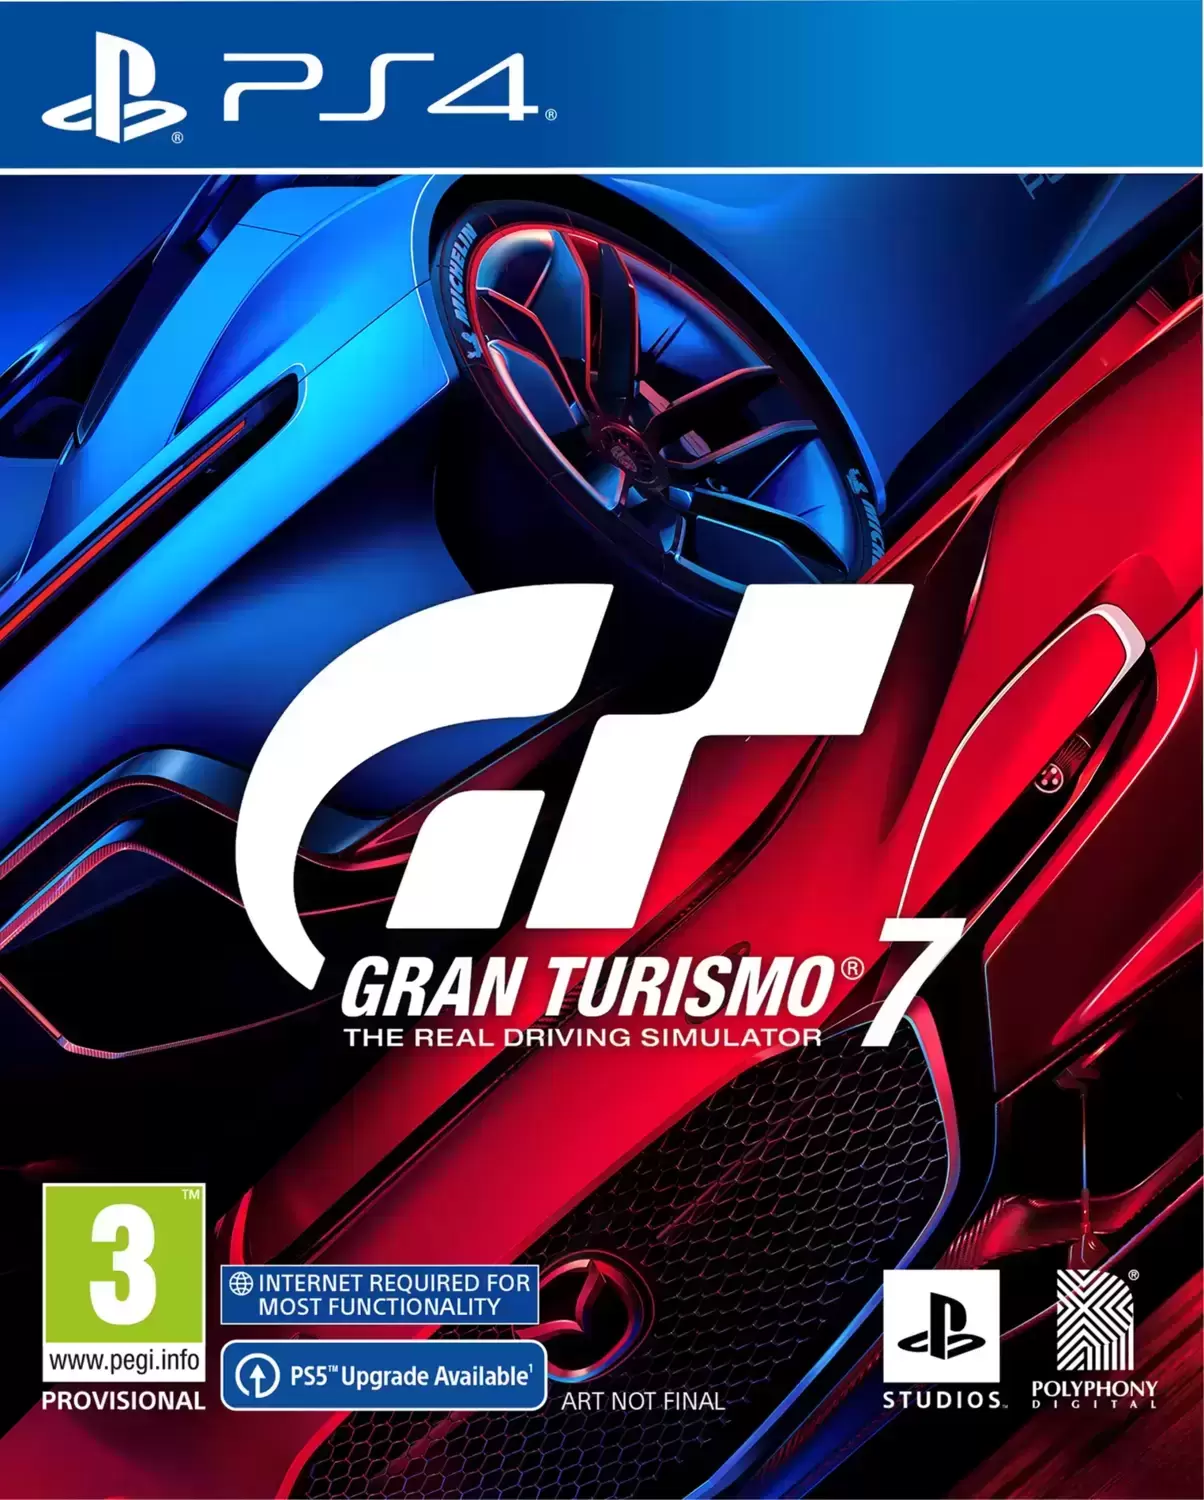 PS4 Games - Gran Turismo 7